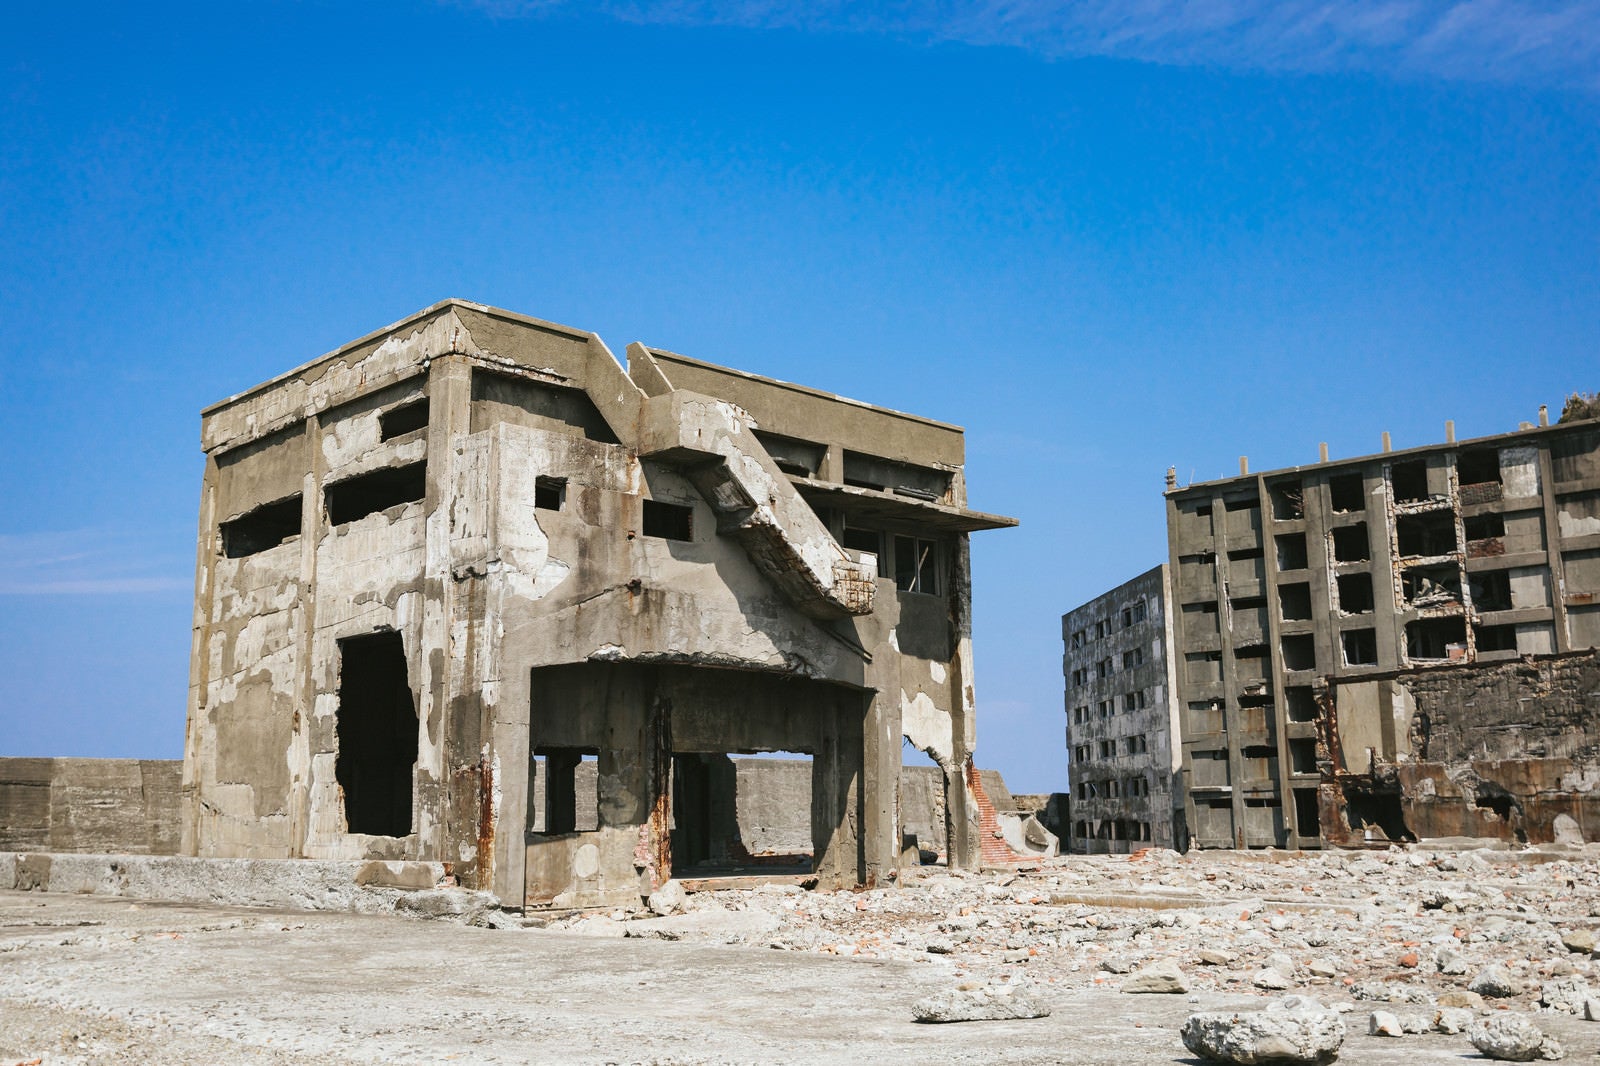 「軍艦島の崩れ行く鉄筋の建物と瓦礫」の写真